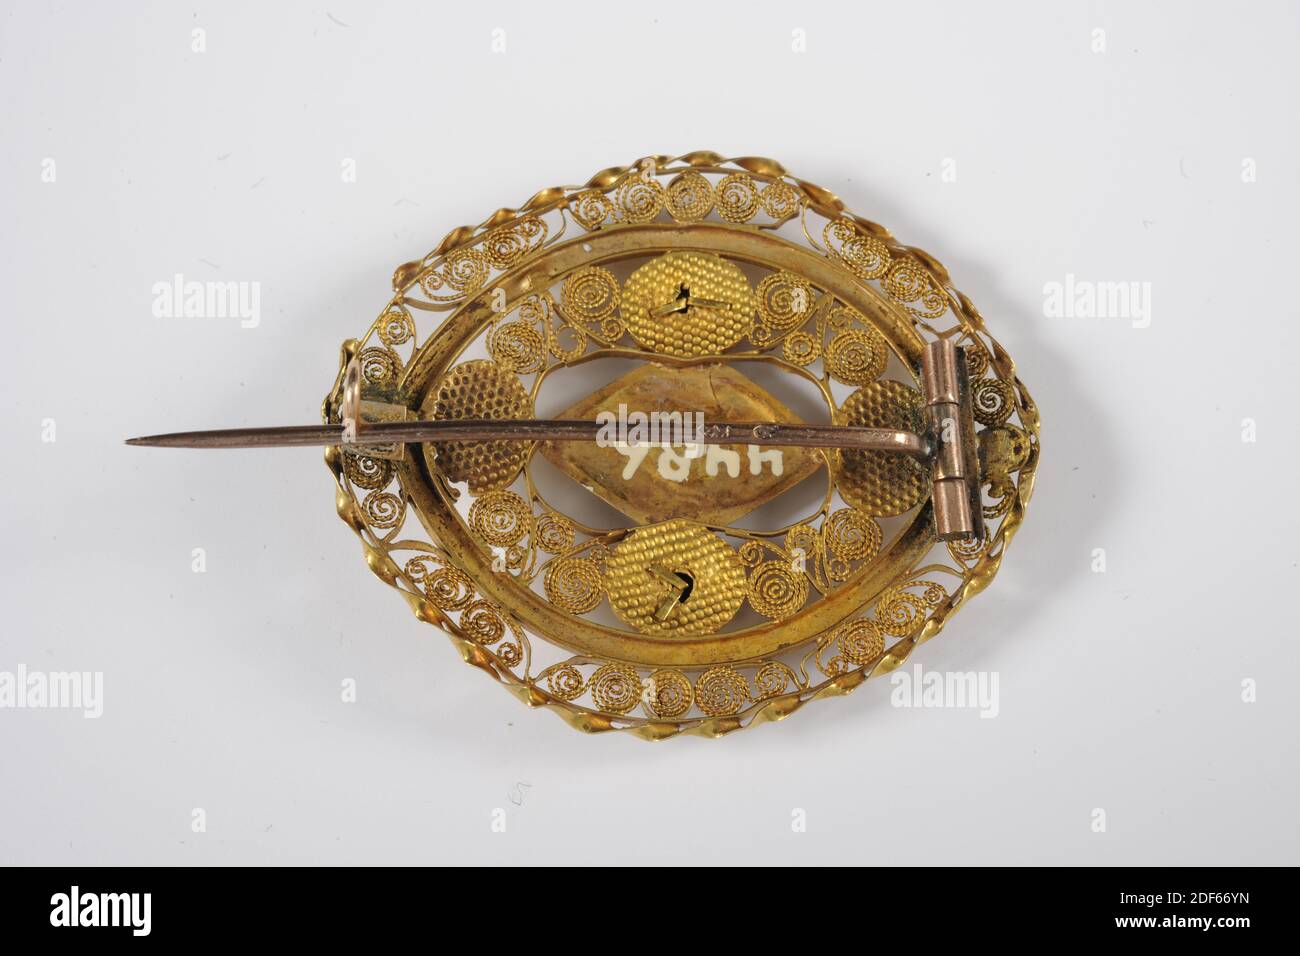 brooch, Anonymous, 1824, oro, piedra ornamental, filigrana, General: 5.5 x  3.6 x 1,2cm 55 x 36 x 12mm, broche de oro oval de obra abierta. En el  exterior un filo decorativo, junto